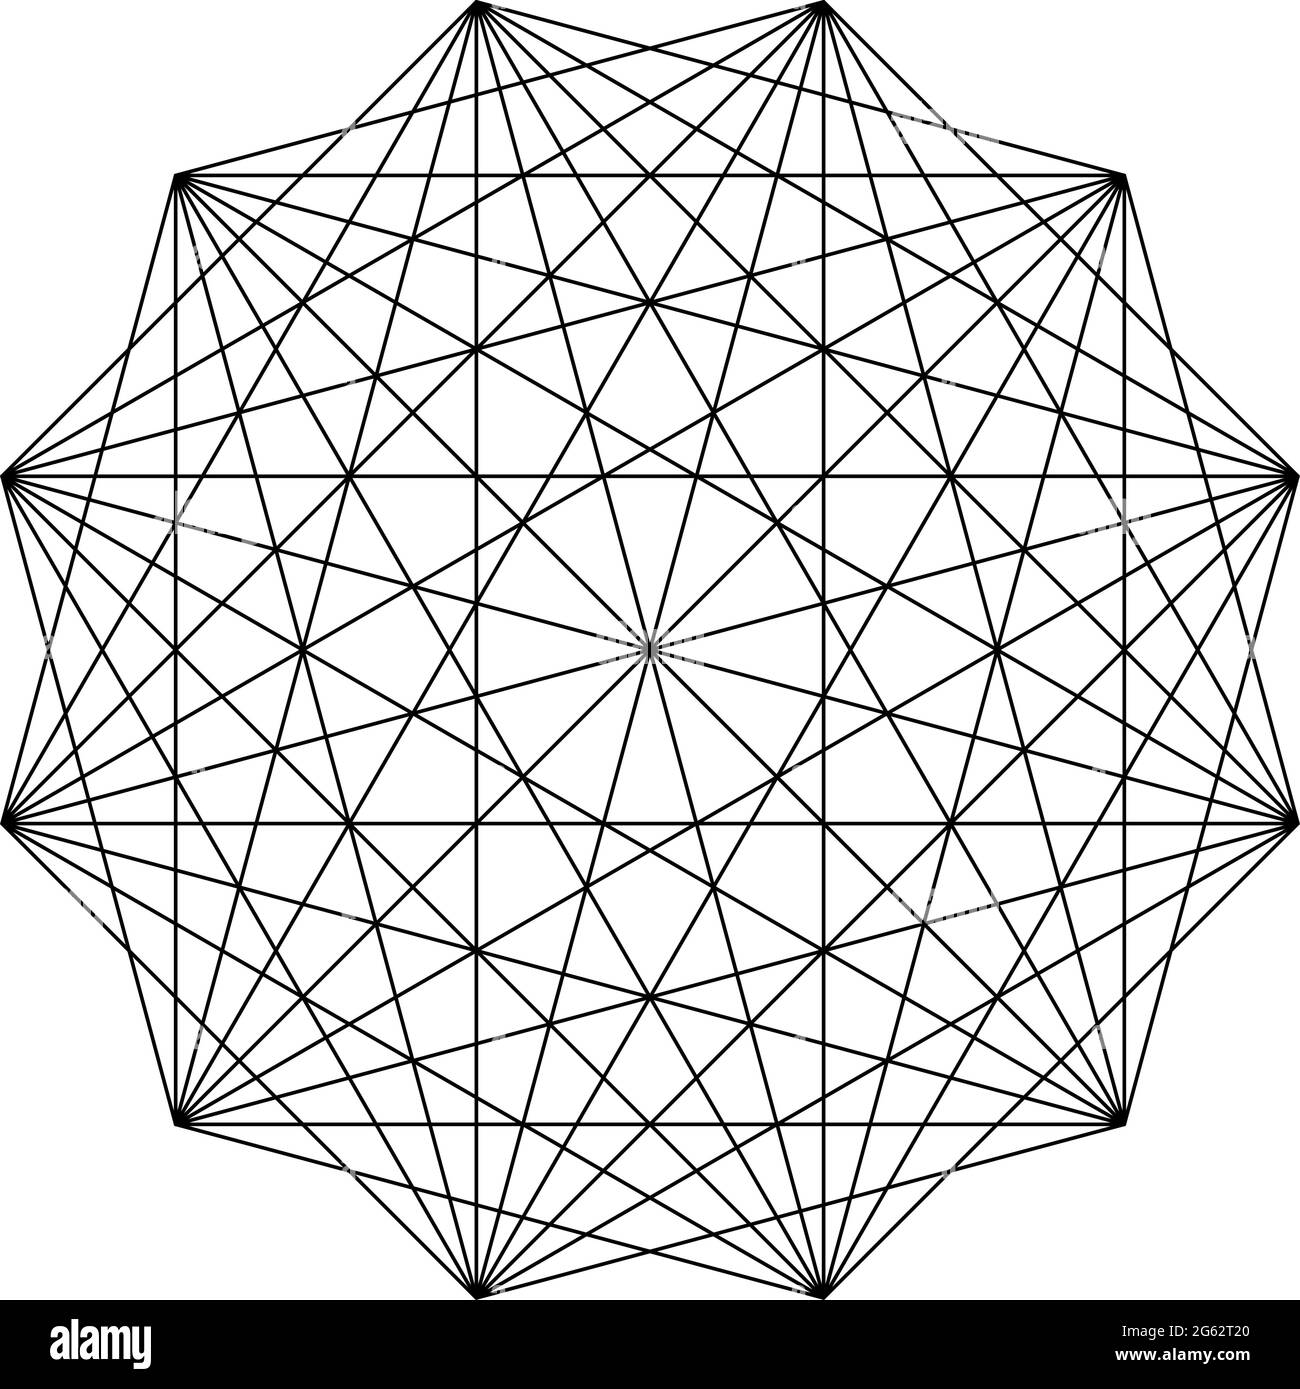 Geometrisches polygone Element mit eingezeichneten Winkeln. Sternform der überschneideten Linien – Vektorgrafik, Clip-Art-Grafiken Stock Vektor